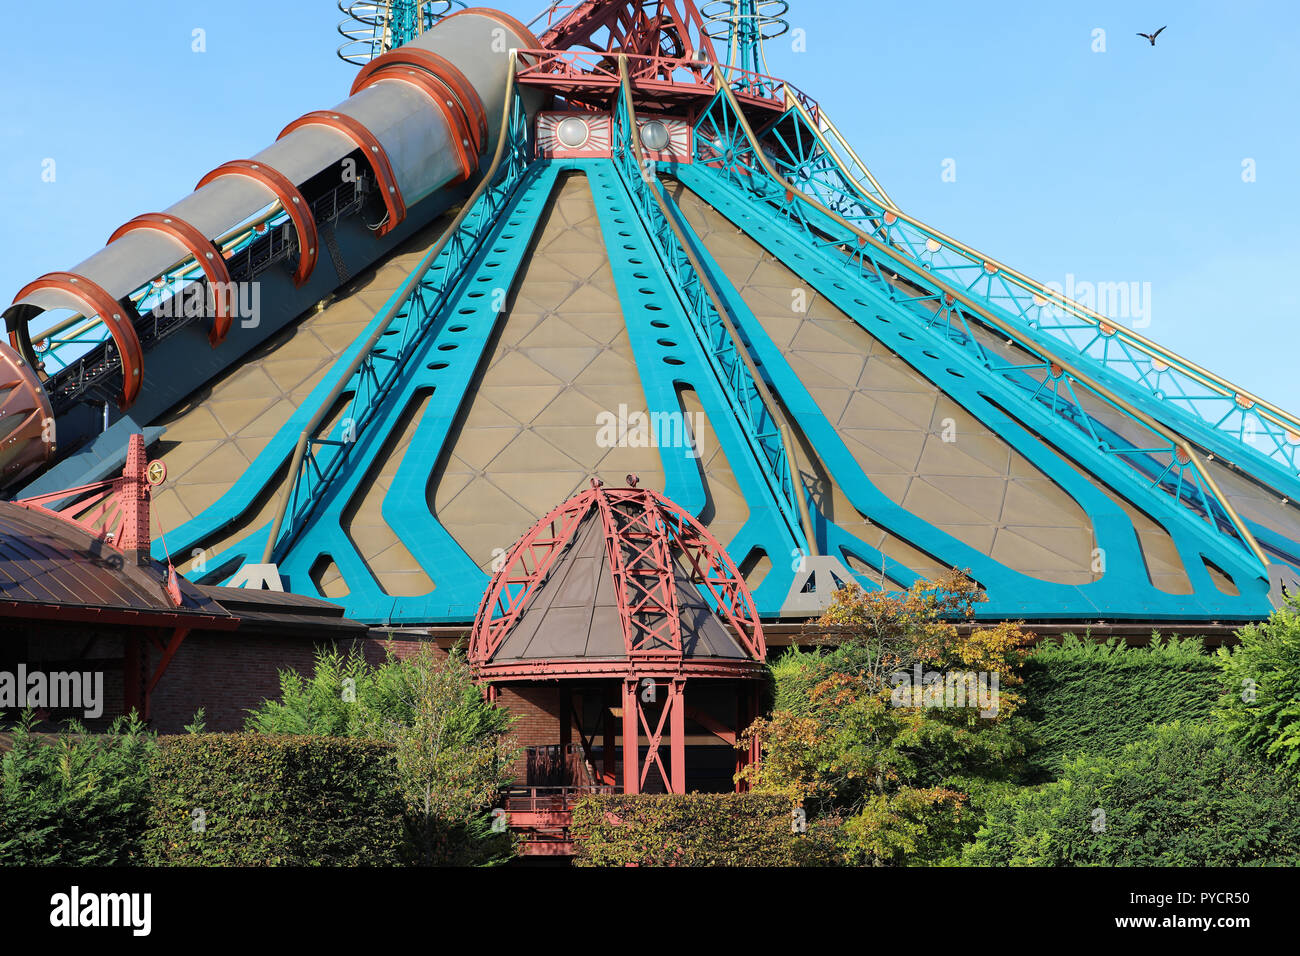 Marne-la-Rechnungshofes©e, Frankreich - Oktober 13, 2018: Star Wars Hyperraum Mountain im Disneyland Paris (Euro Disney), Rolle Coaster-Type Attraktion in Discov Stockfoto